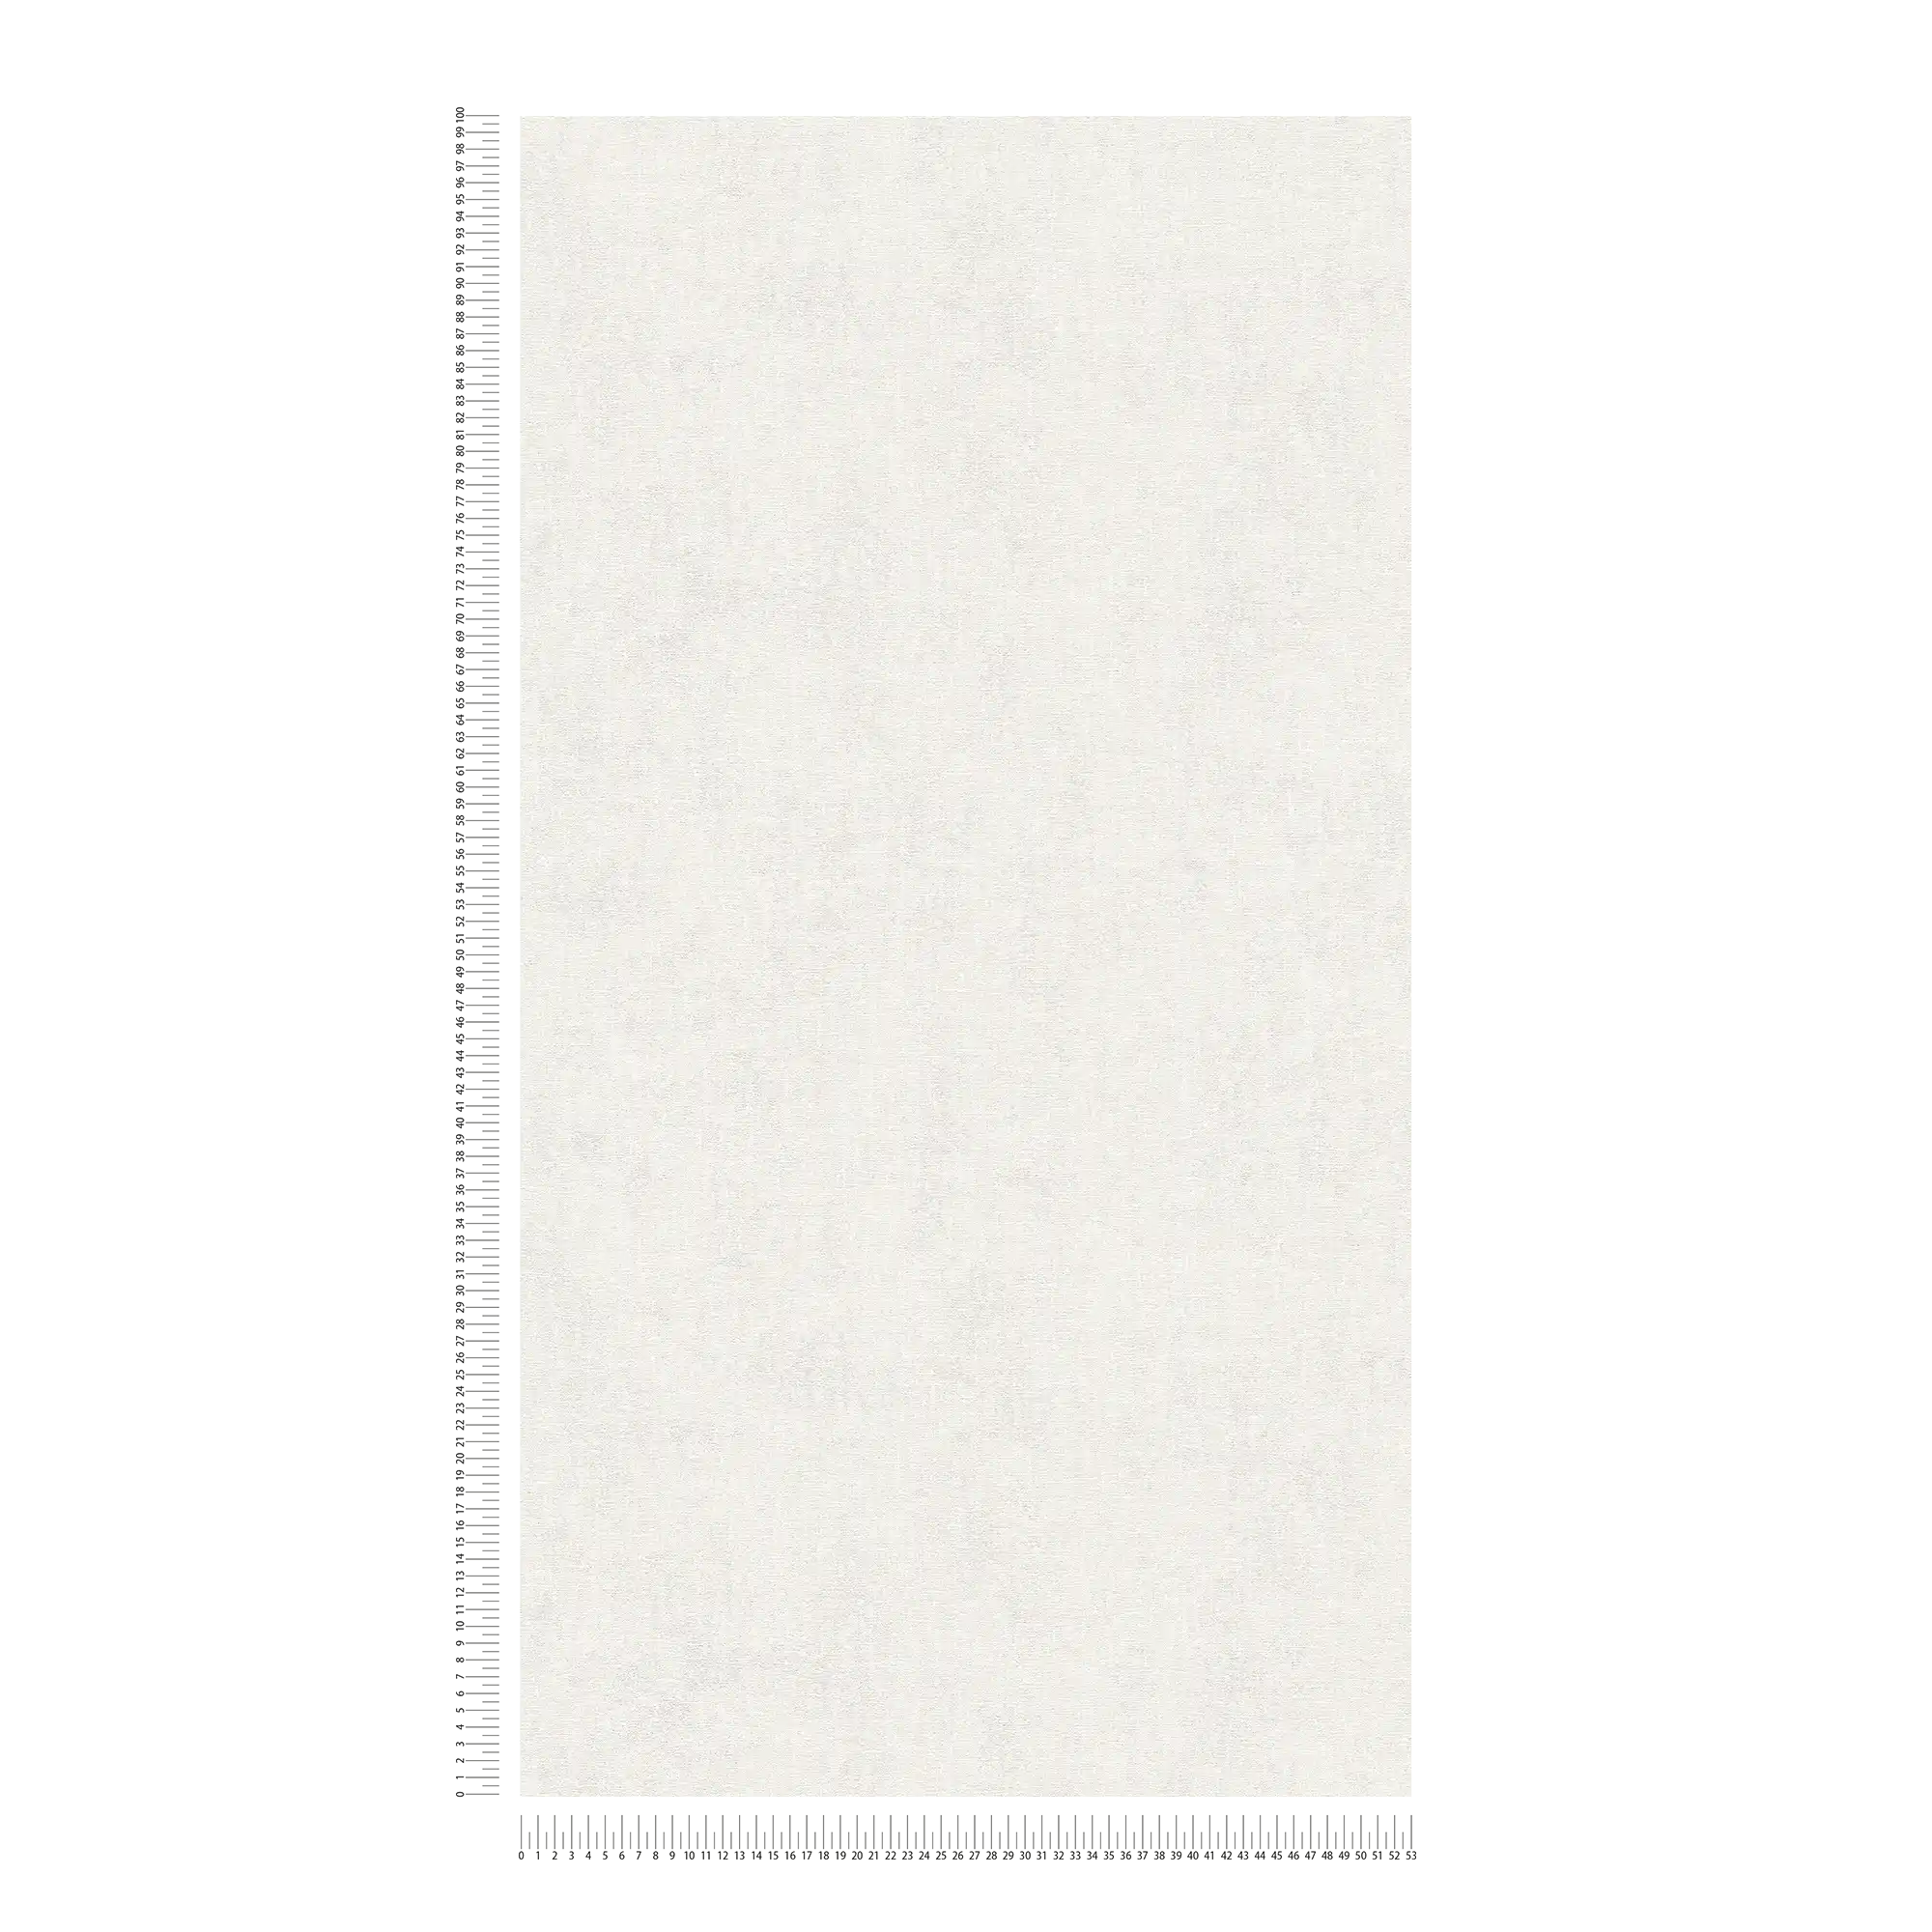             Papier peint uni chiné avec aspect textile - crème
        